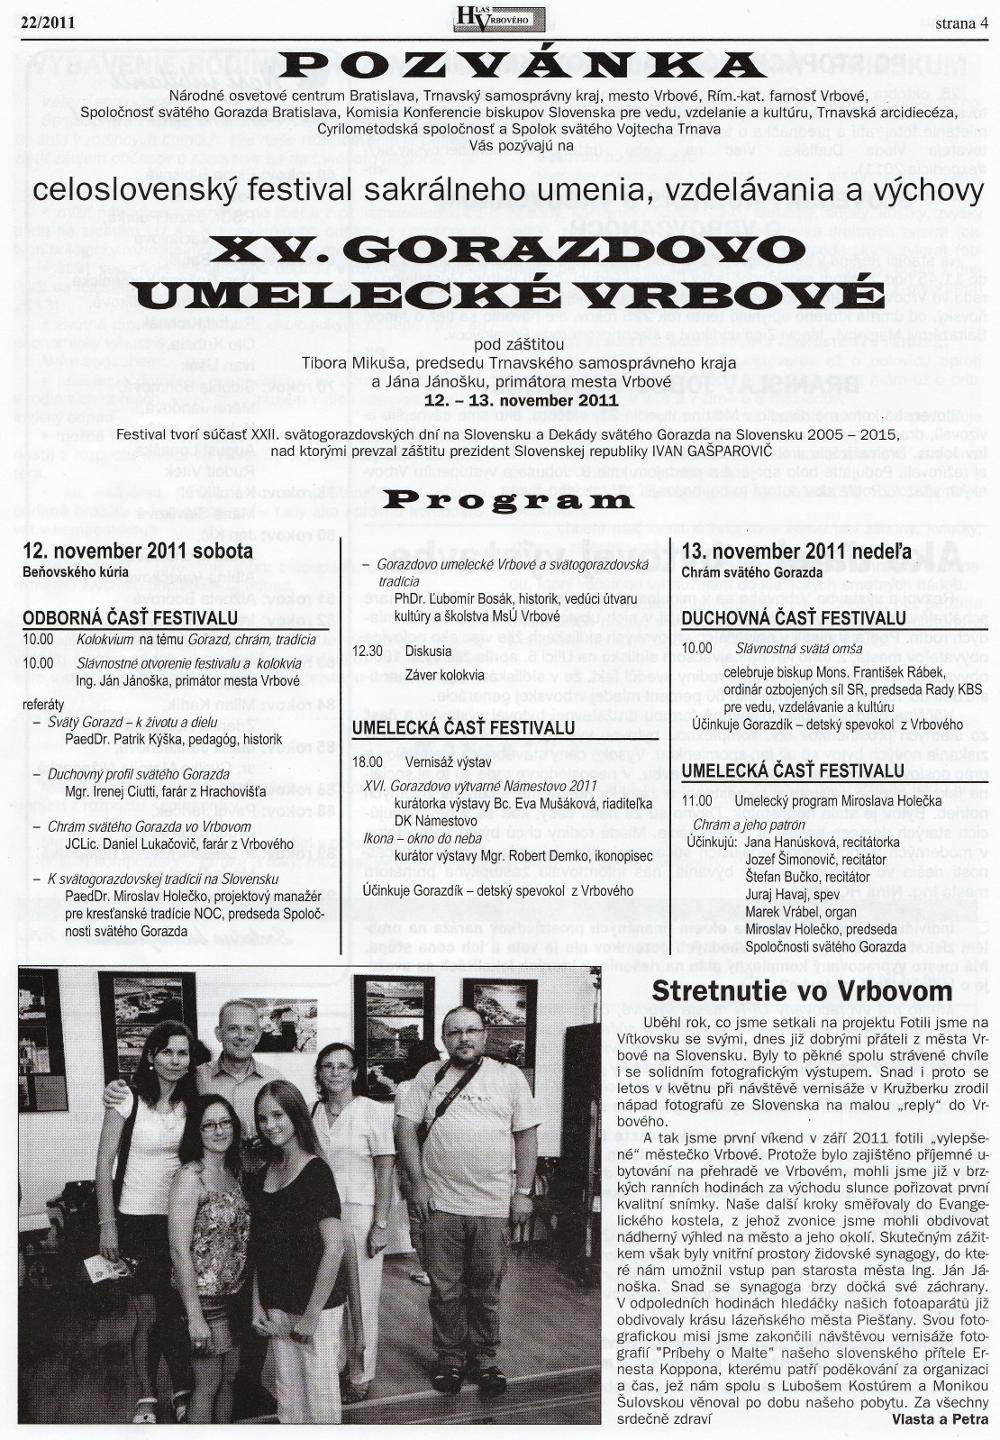 Hlas Vrbového 22/2011, strana 4